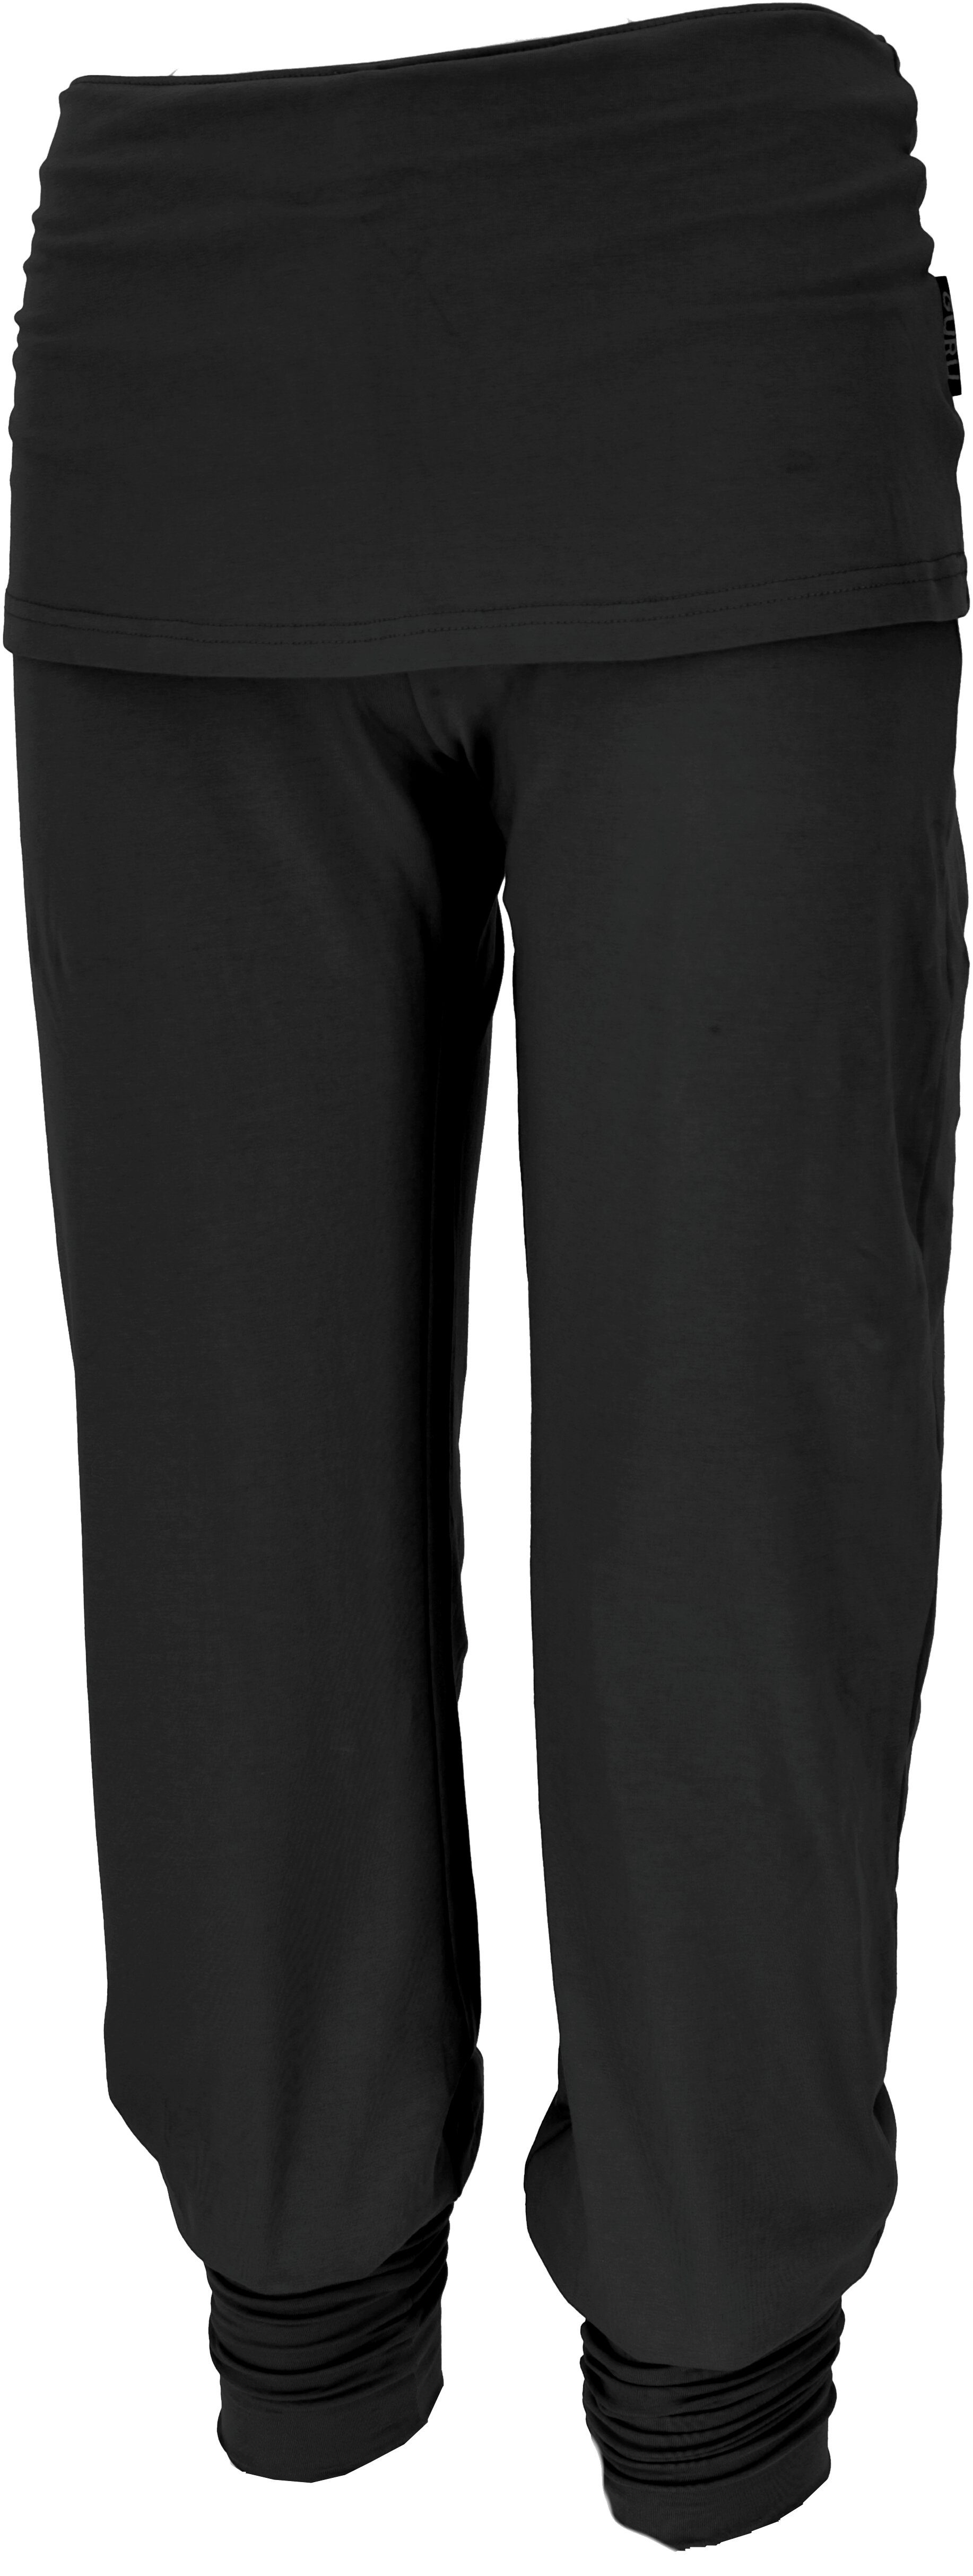 Guru-Shop Relaxhose Yoga-Hose mit Minirock Bio-Qualität - Bekleidung alternative schwarz in